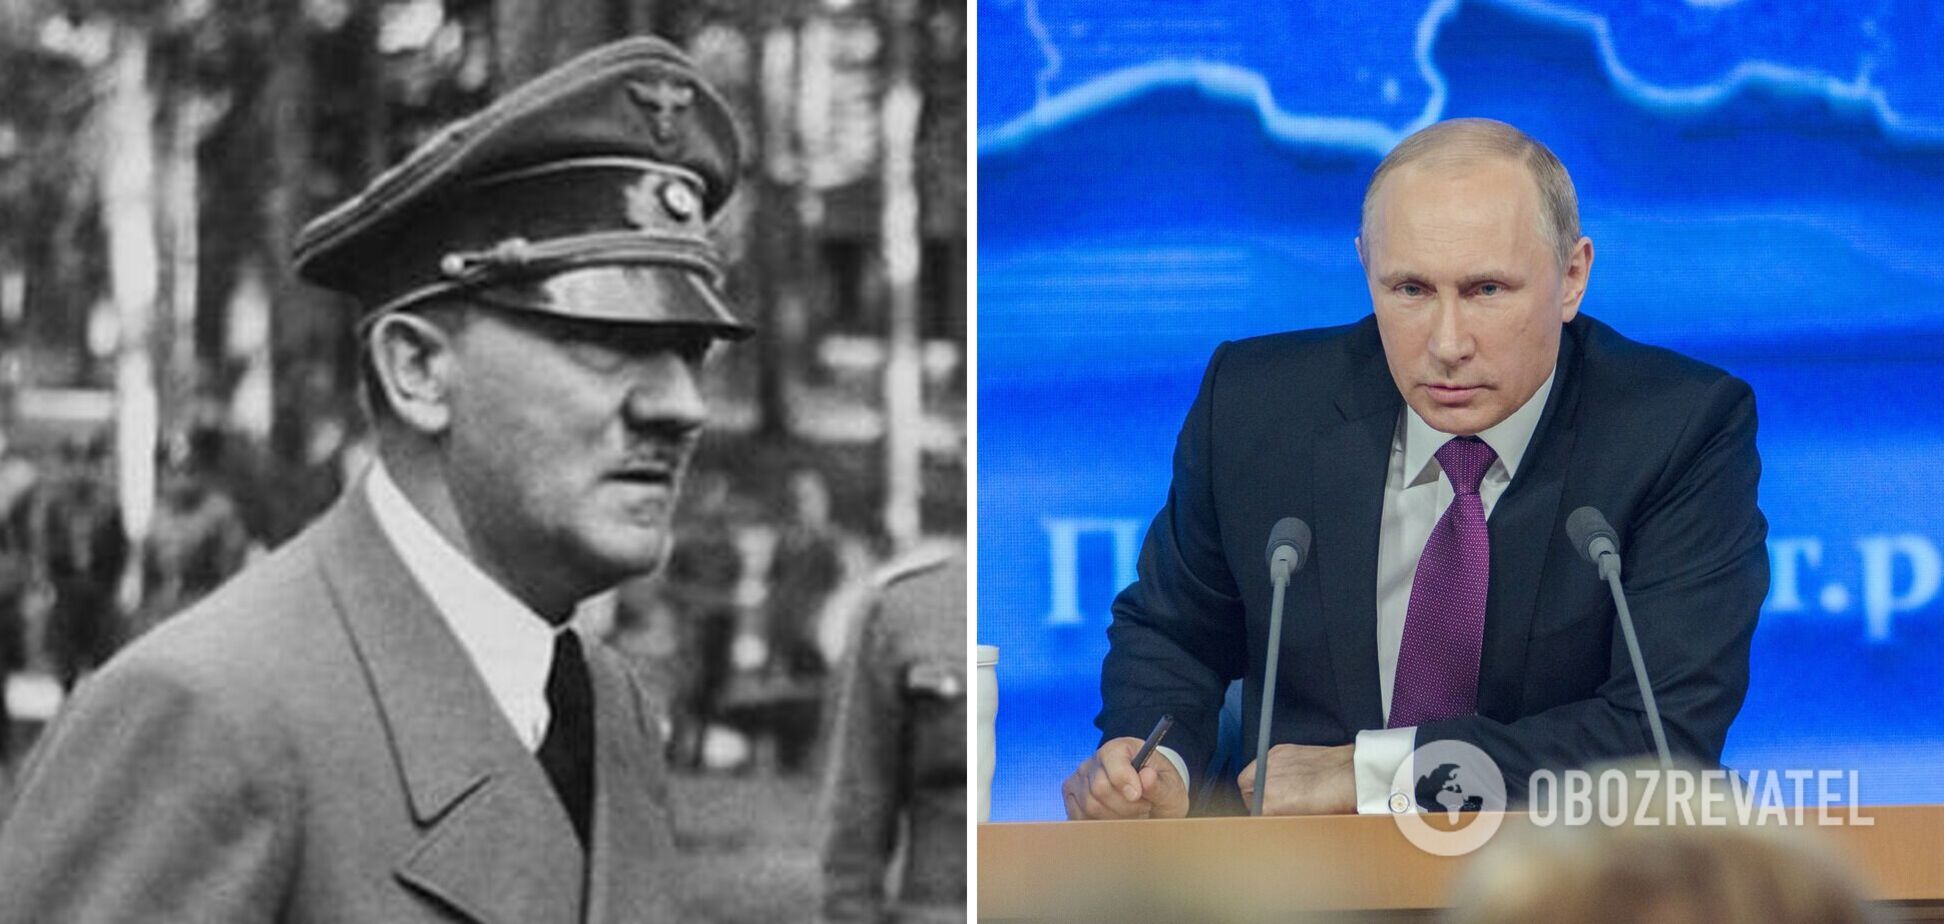 Путин повторяет эпизоды из биографии Гитлера в своей жизни